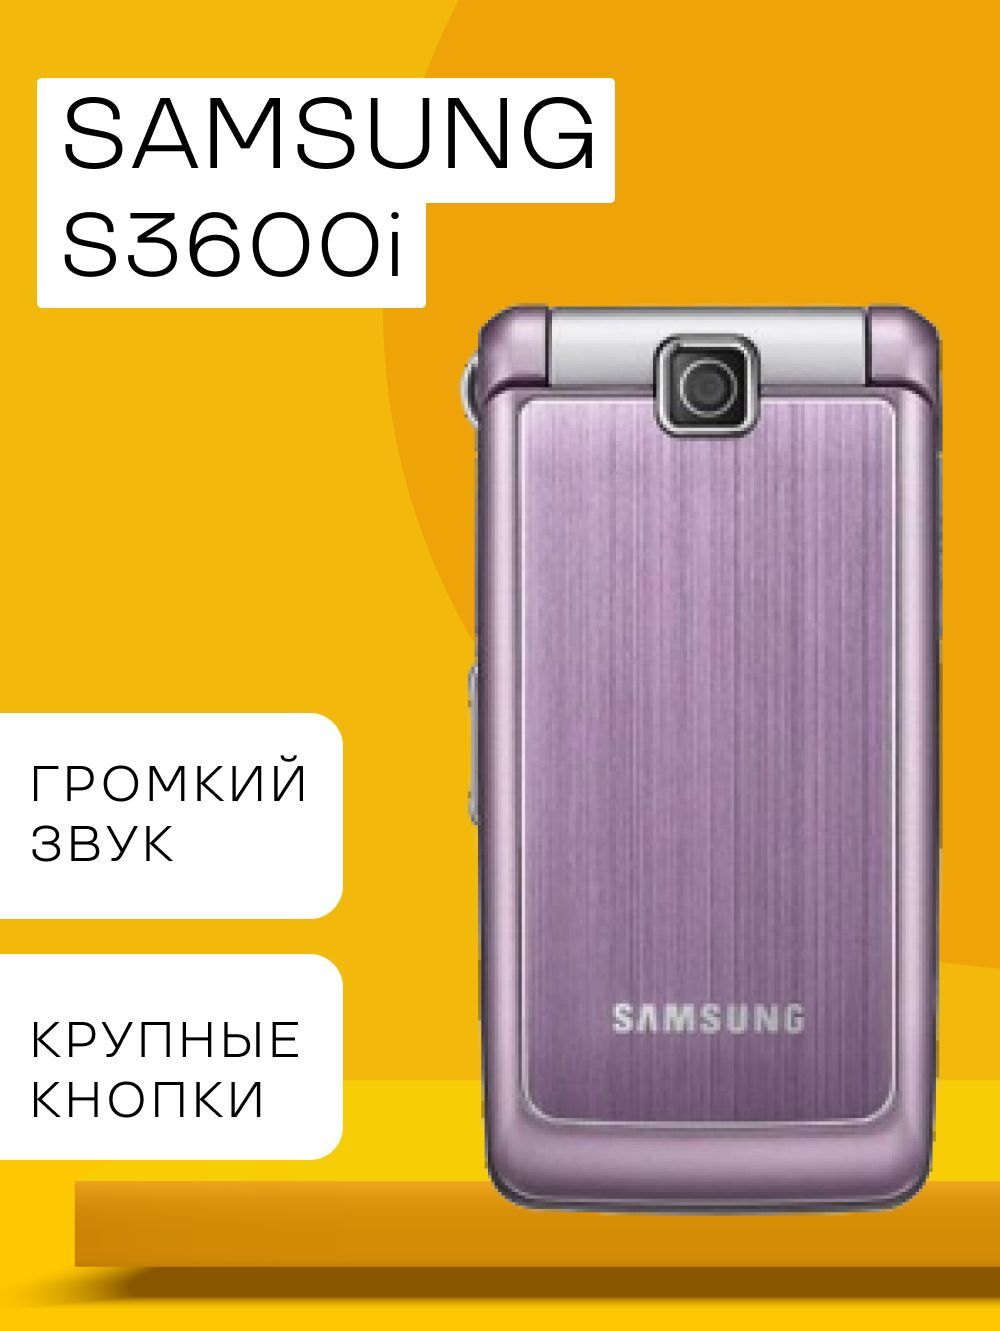 Мобильный телефон Samsung S3600i, розовый - купить по выгодной цене в  интернет-магазине OZON (818790814)